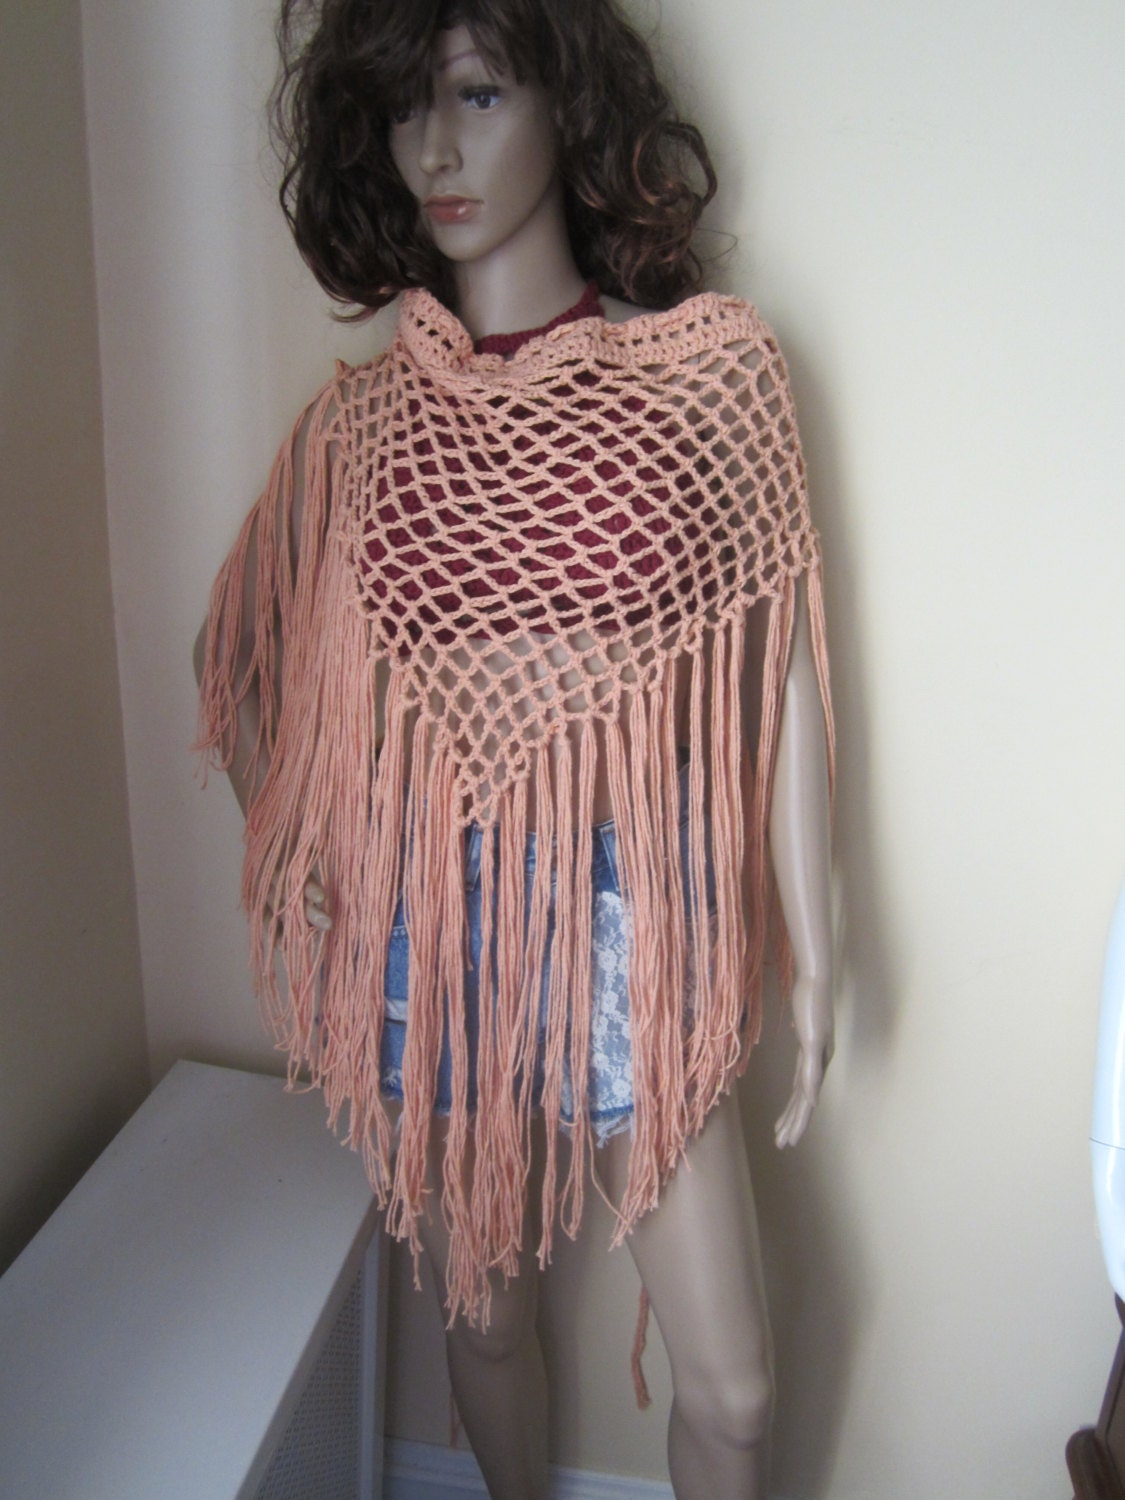 Crochet scarf elongated fringe sarong fringe skirt shawl